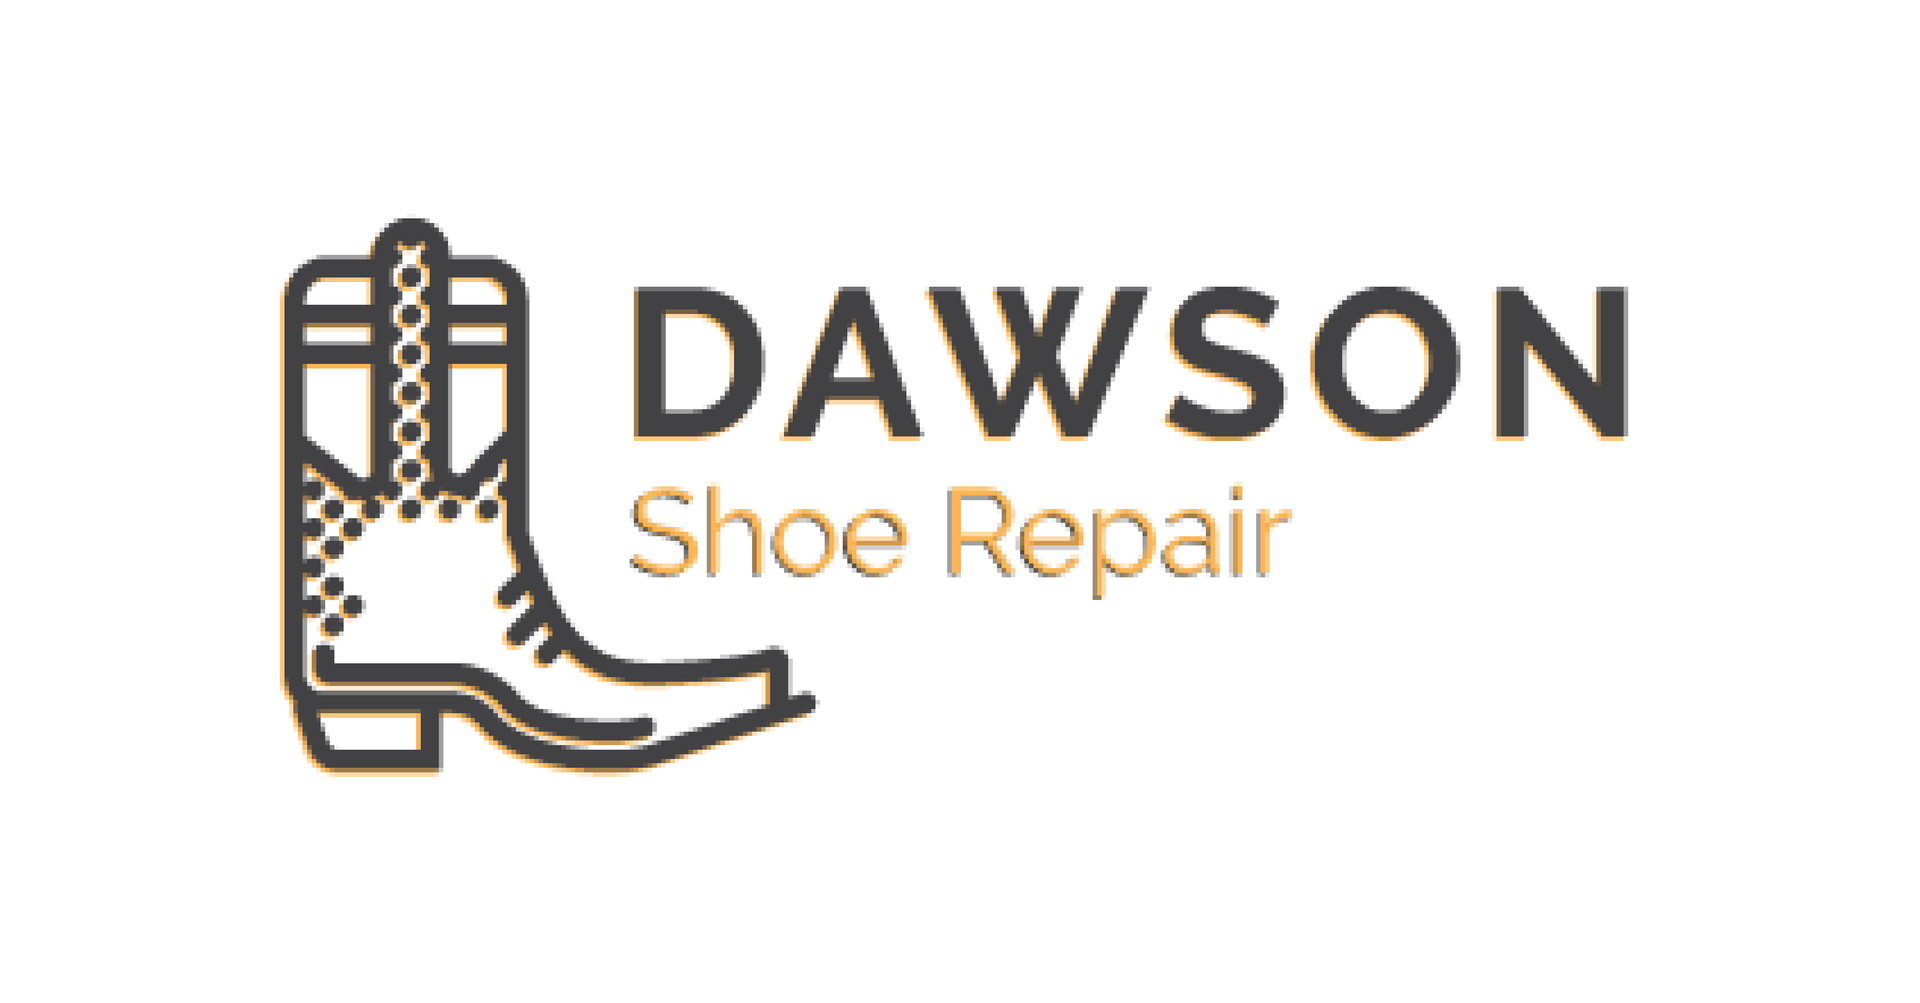 Shoe Repair, Dawson Shoe Repair